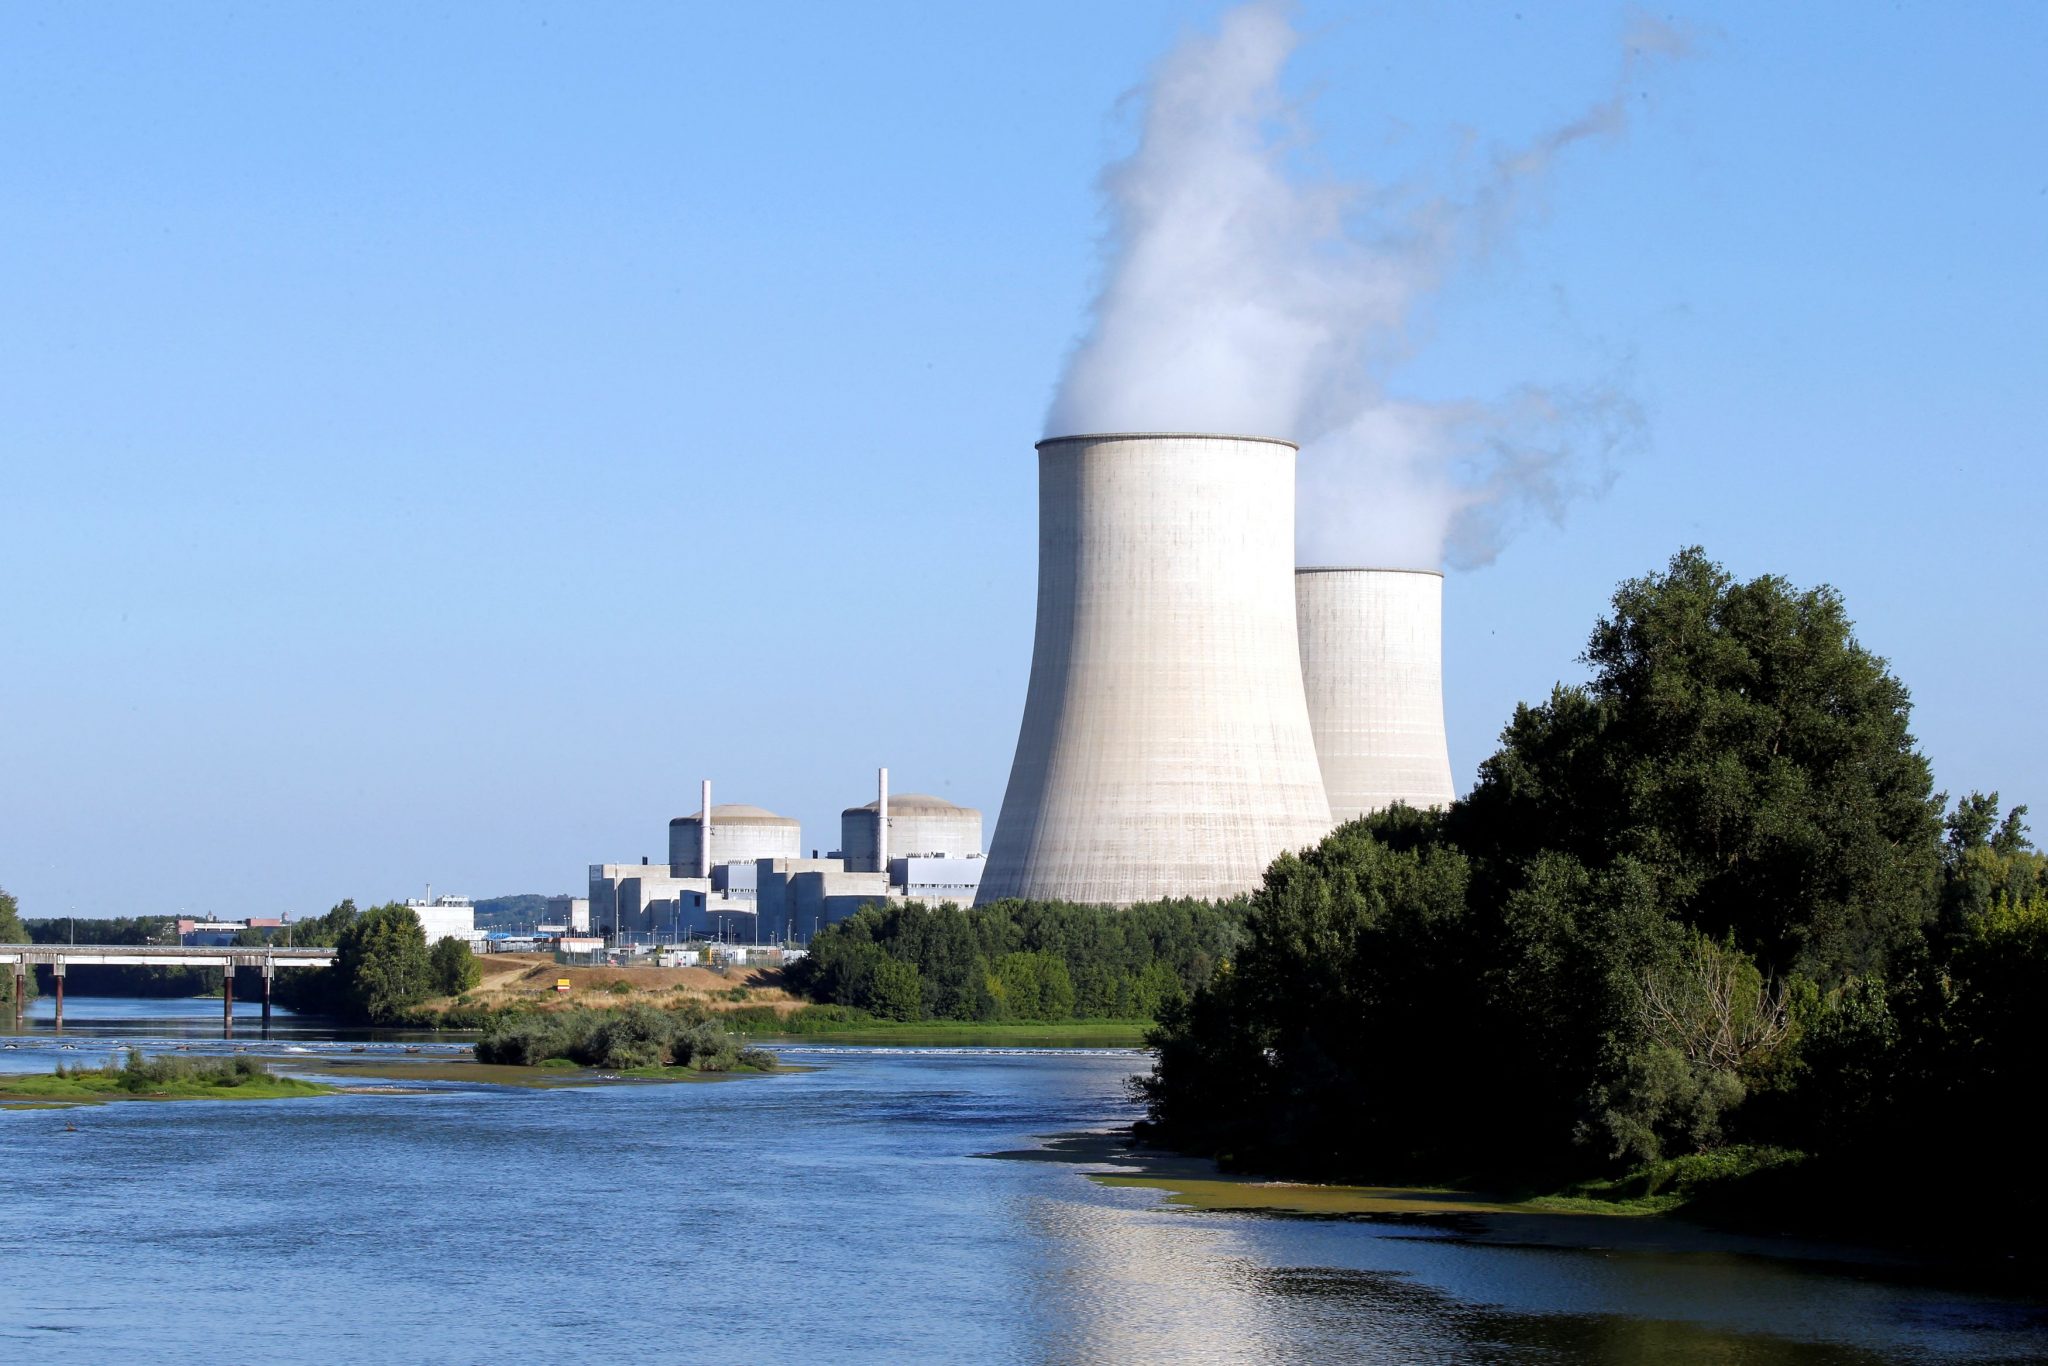 Η πυρηνική Μελόνι θέλει να ξαναφέρει αντιδραστήρες στην Ιταλία